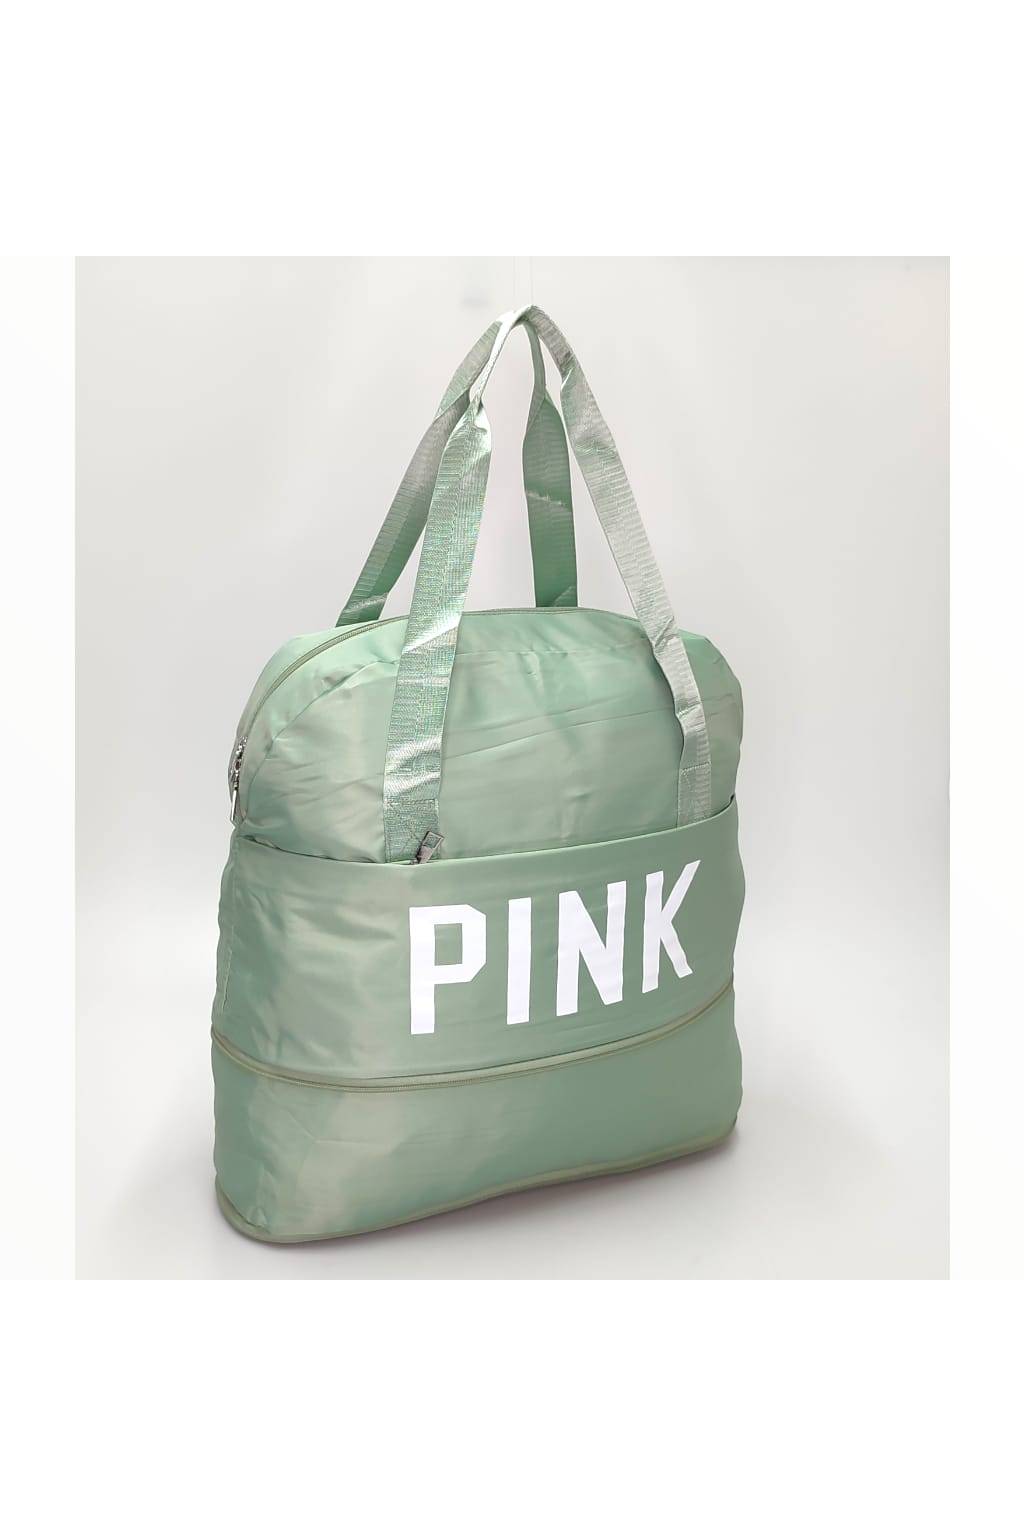 A Multifunkčná taška 1030 zelená www.kabelky vypredaj (2)